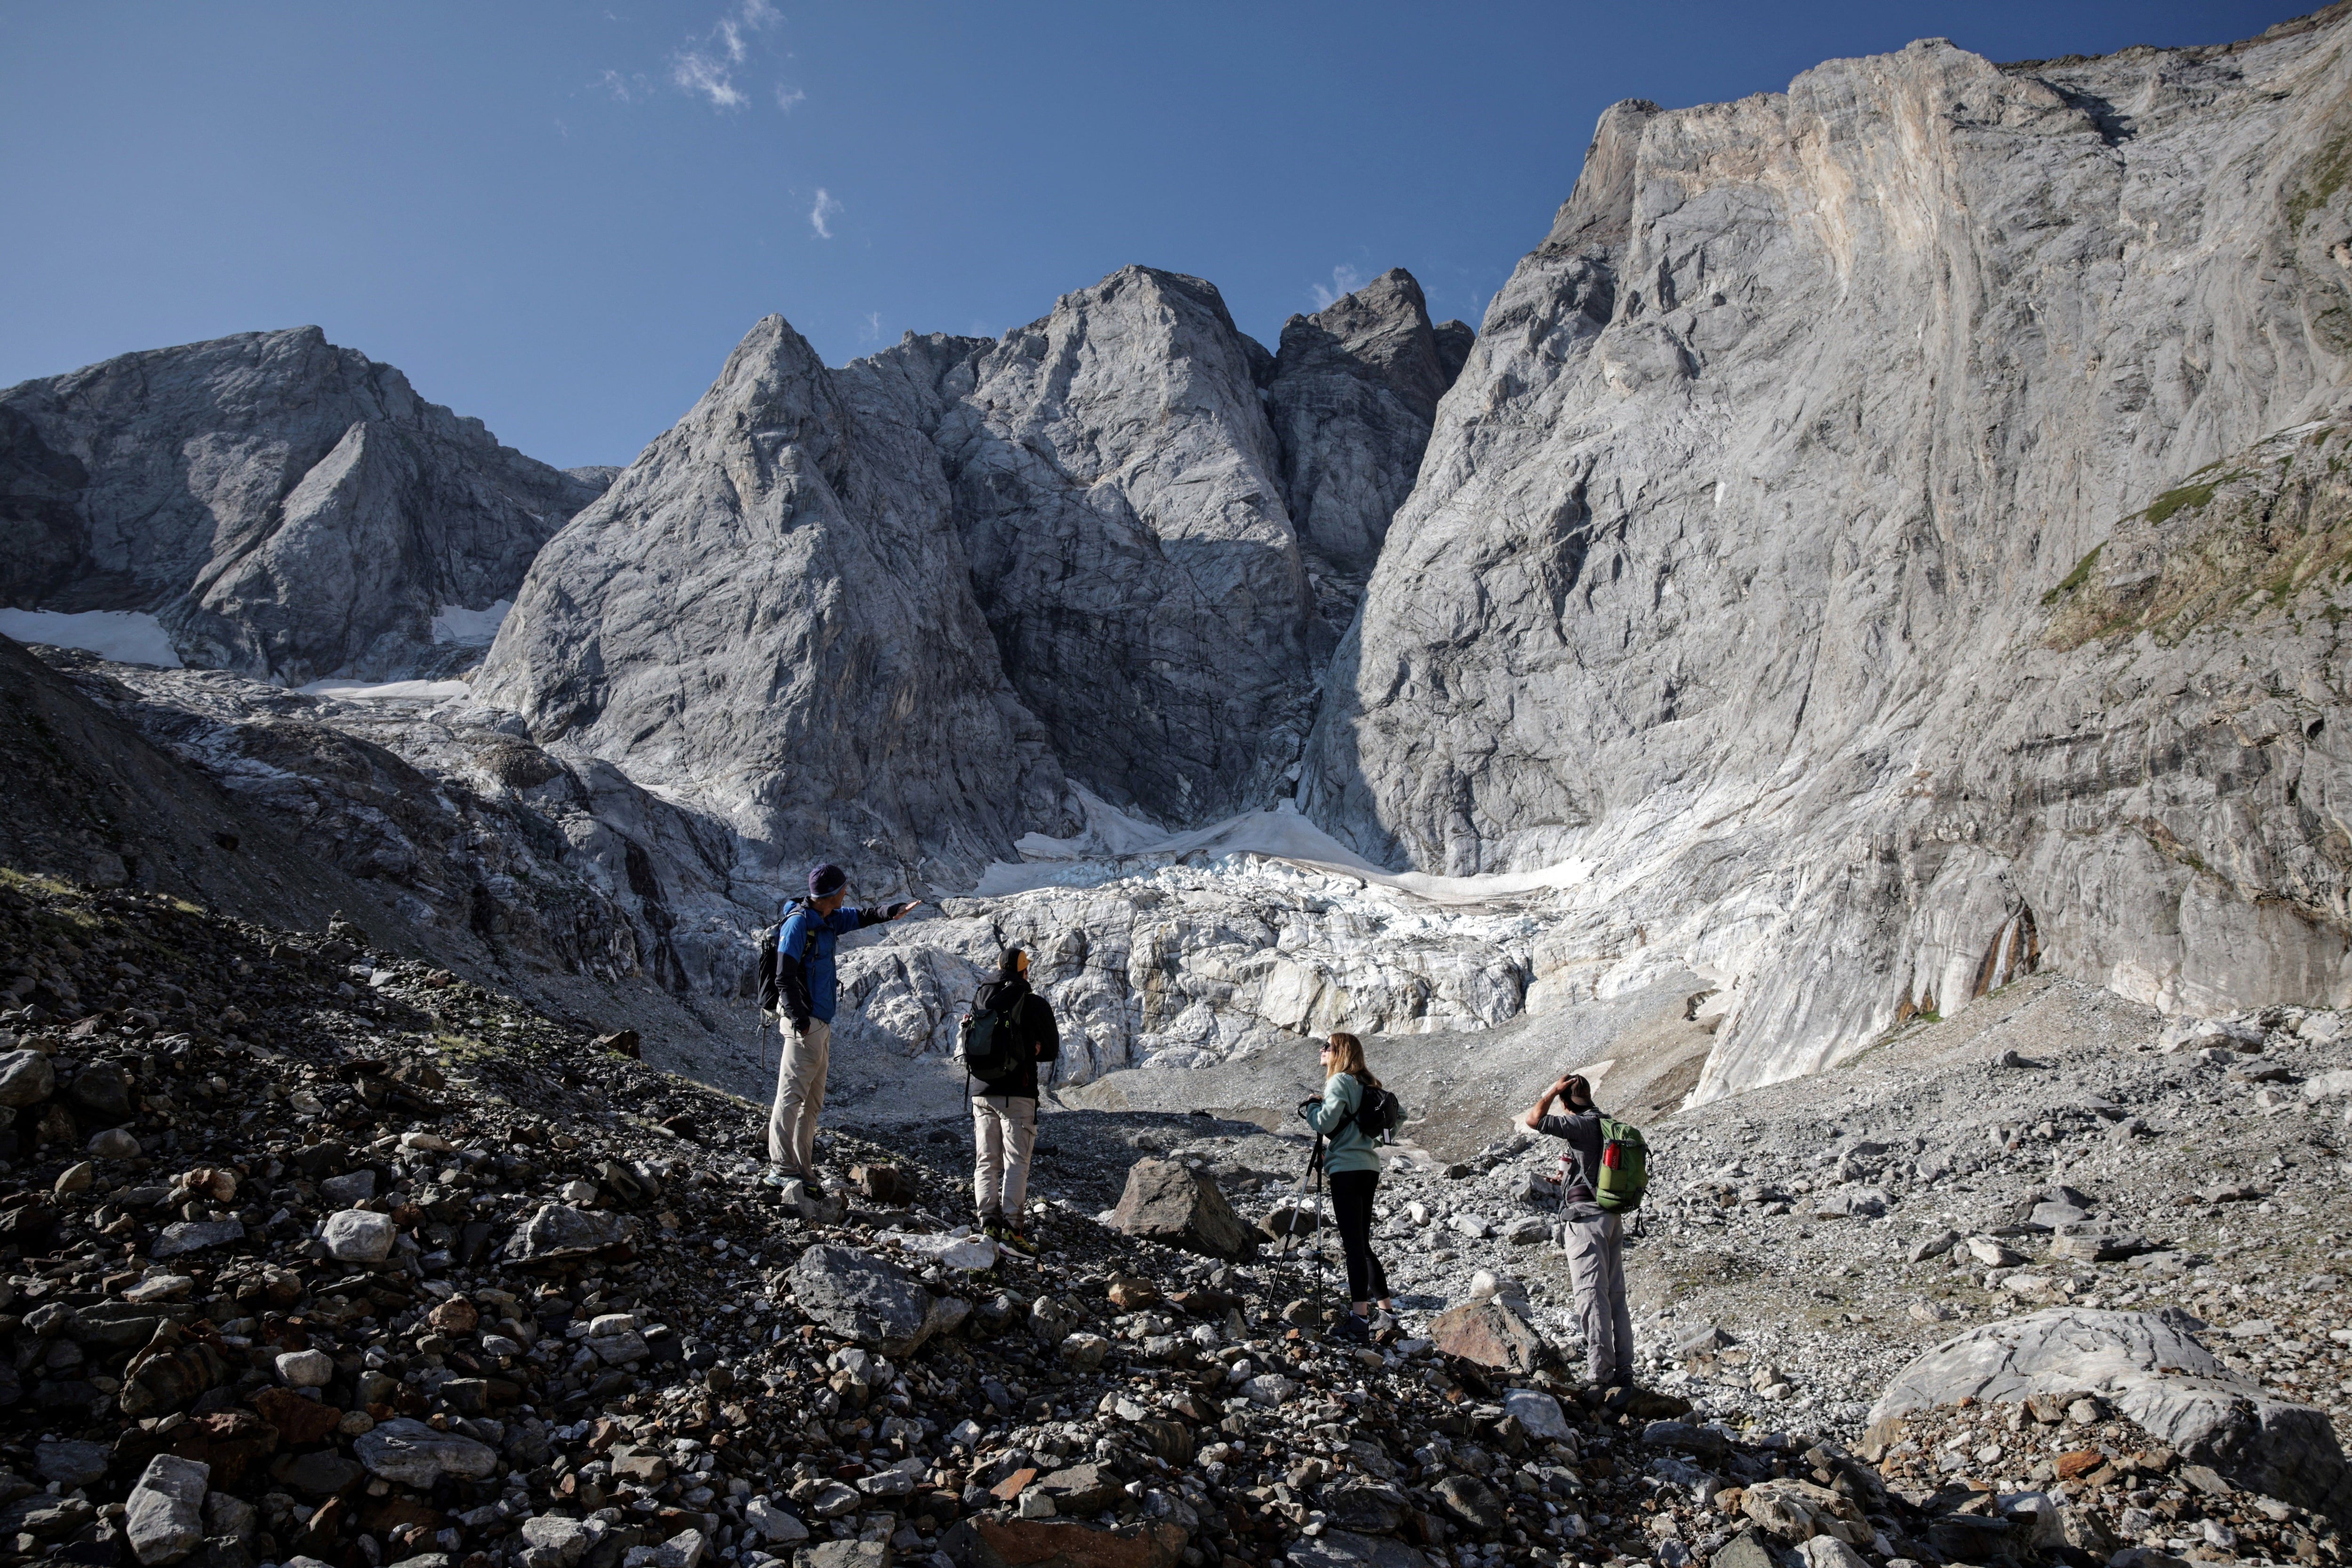 Alrededor de la mitad del siglo XIX había un centenar de glaciares en los Pirineos. Hoy, unos veinte desaparecieron, según estimaciones del experto. (AFP)